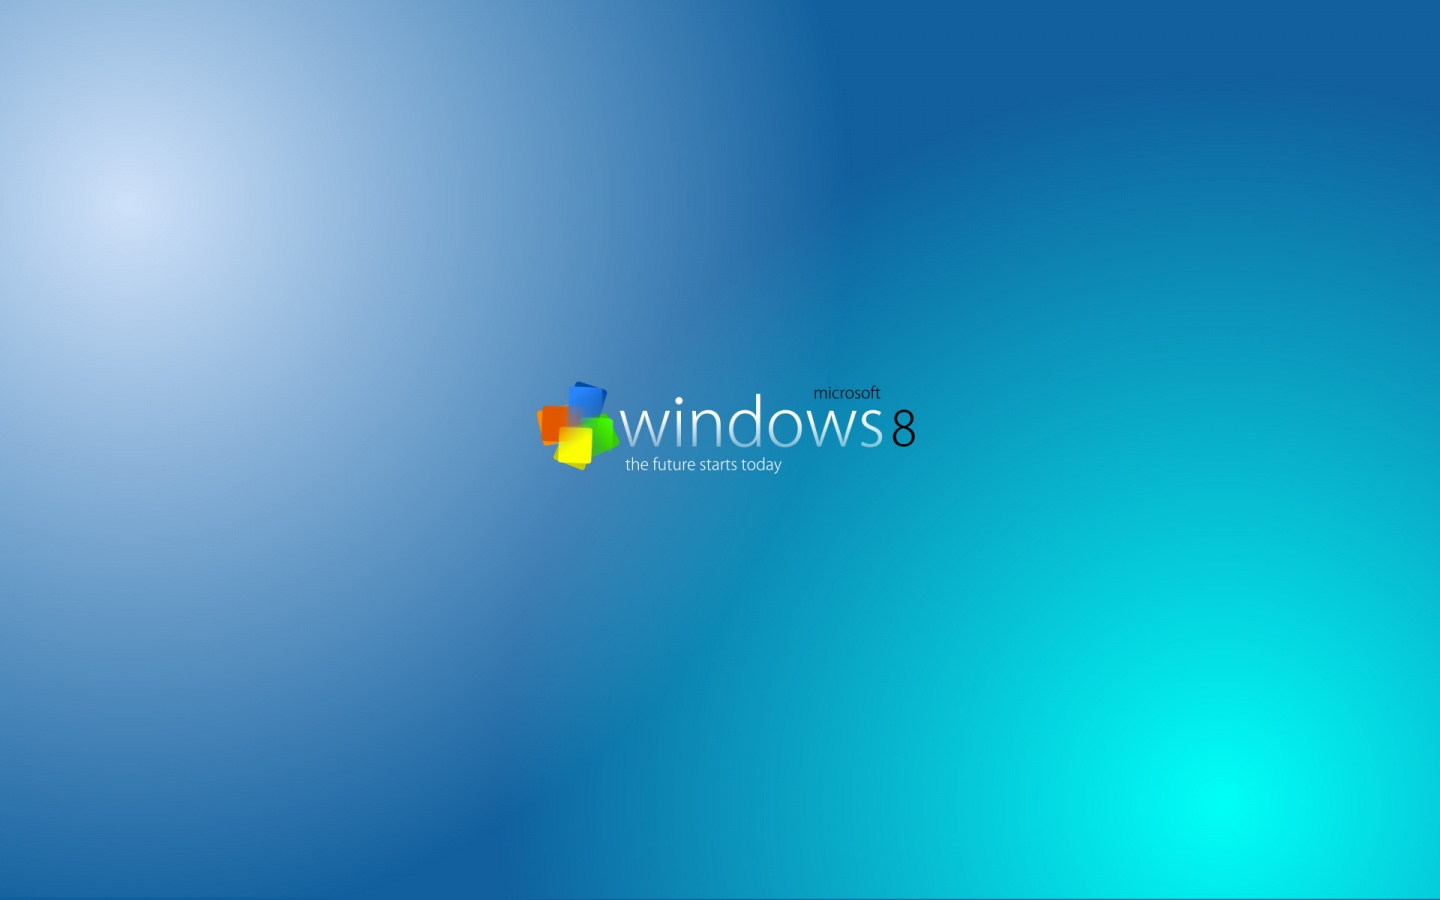 [48+] Windows 9 Wallpapers HD | WallpaperSafari